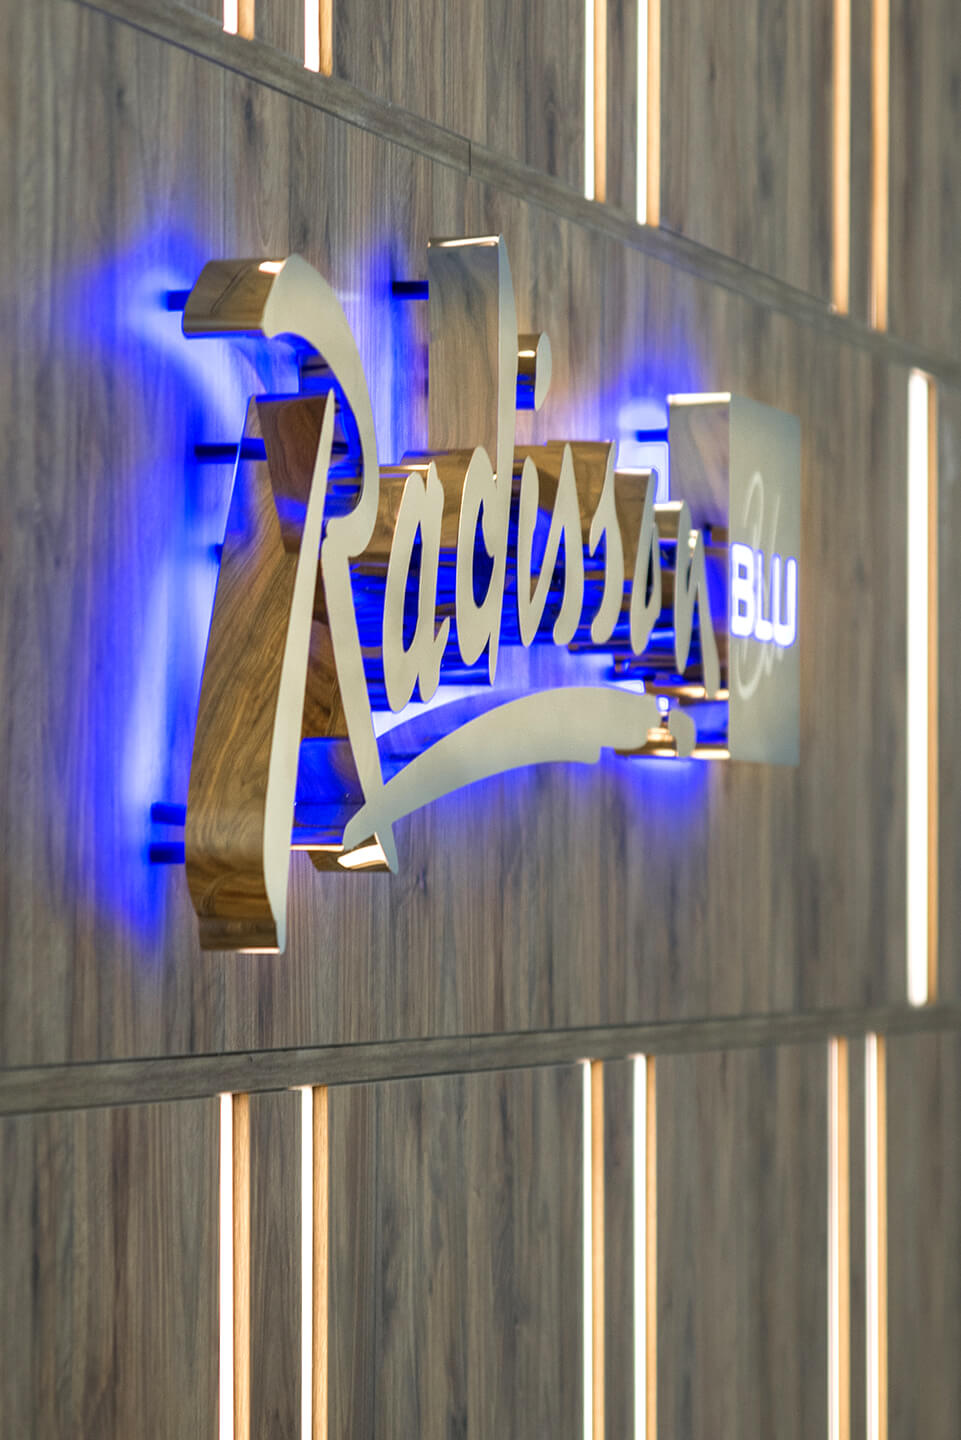 radisson-blu-lettere-dalla-placca-argento-lettere-d'oro-reception-in-hotel-su-una-parete-di-legno-lettere-illuminate-dal-blu-sopot-logo-compagnia-esclusiva-glamour